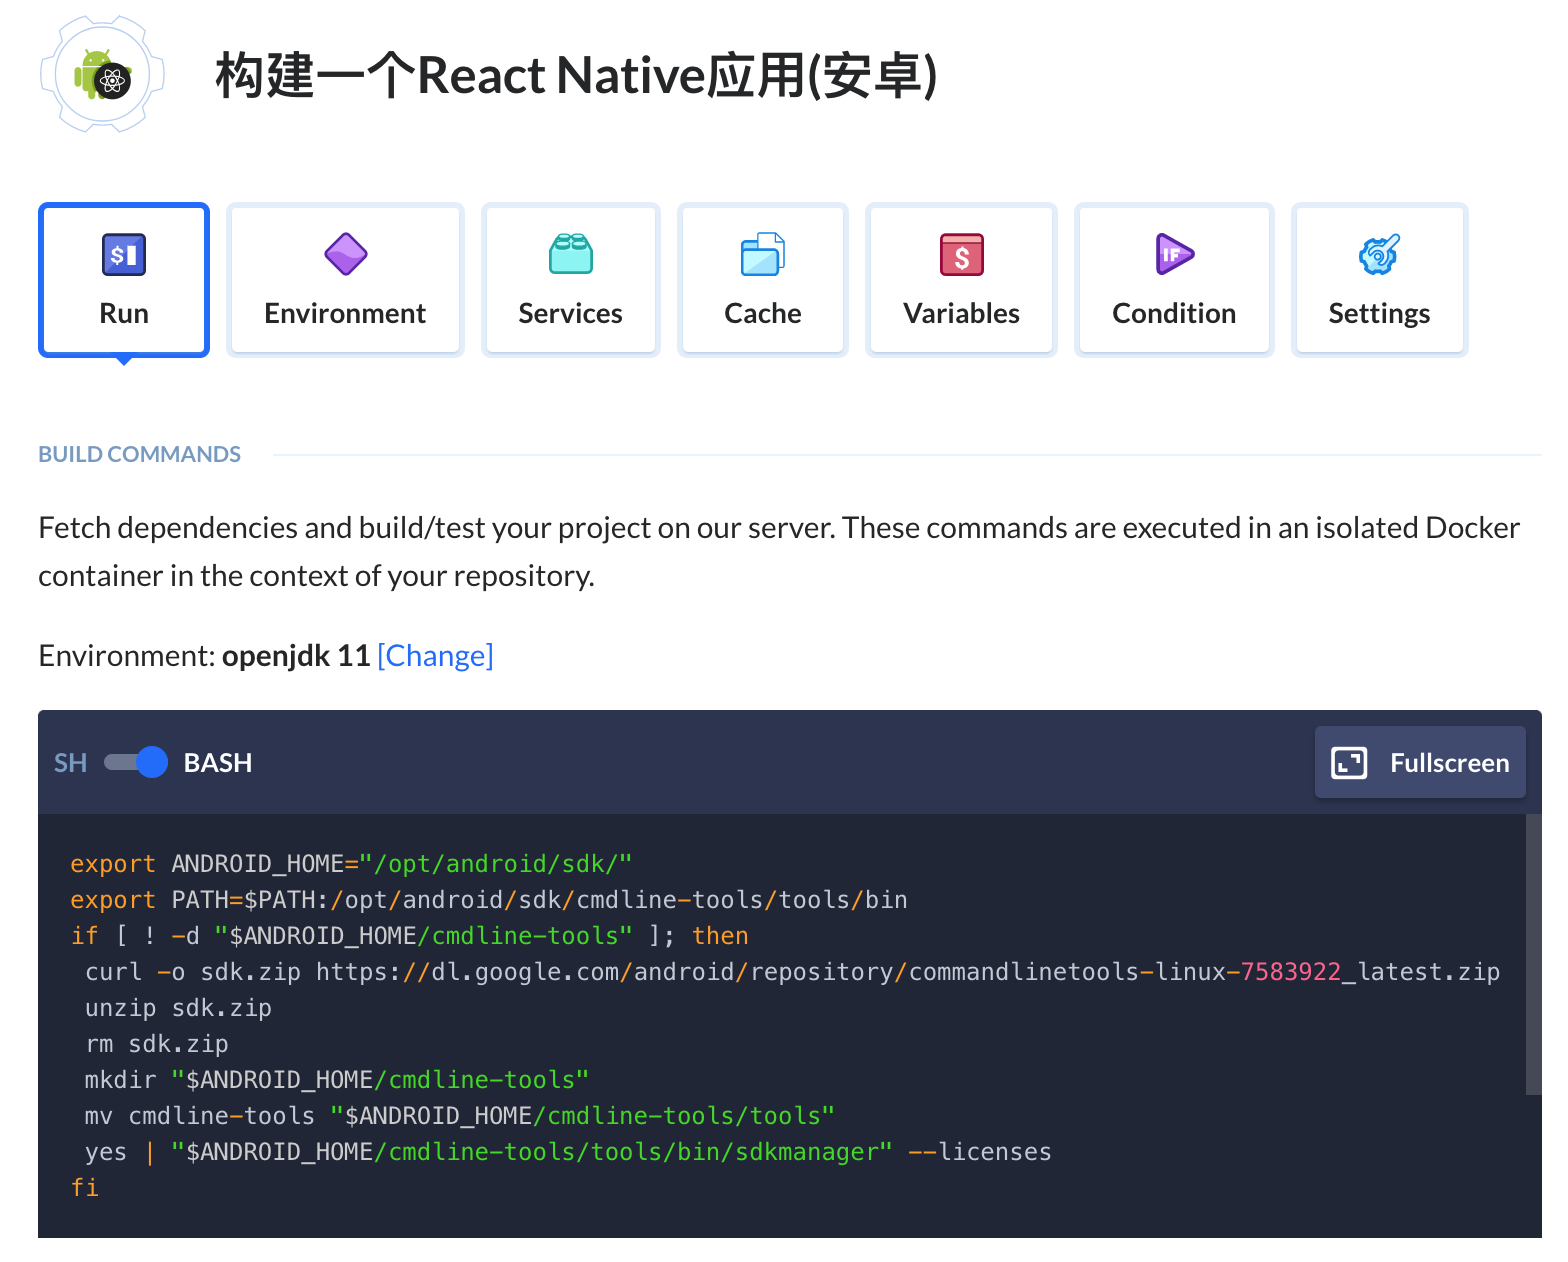 Default React native action build commands